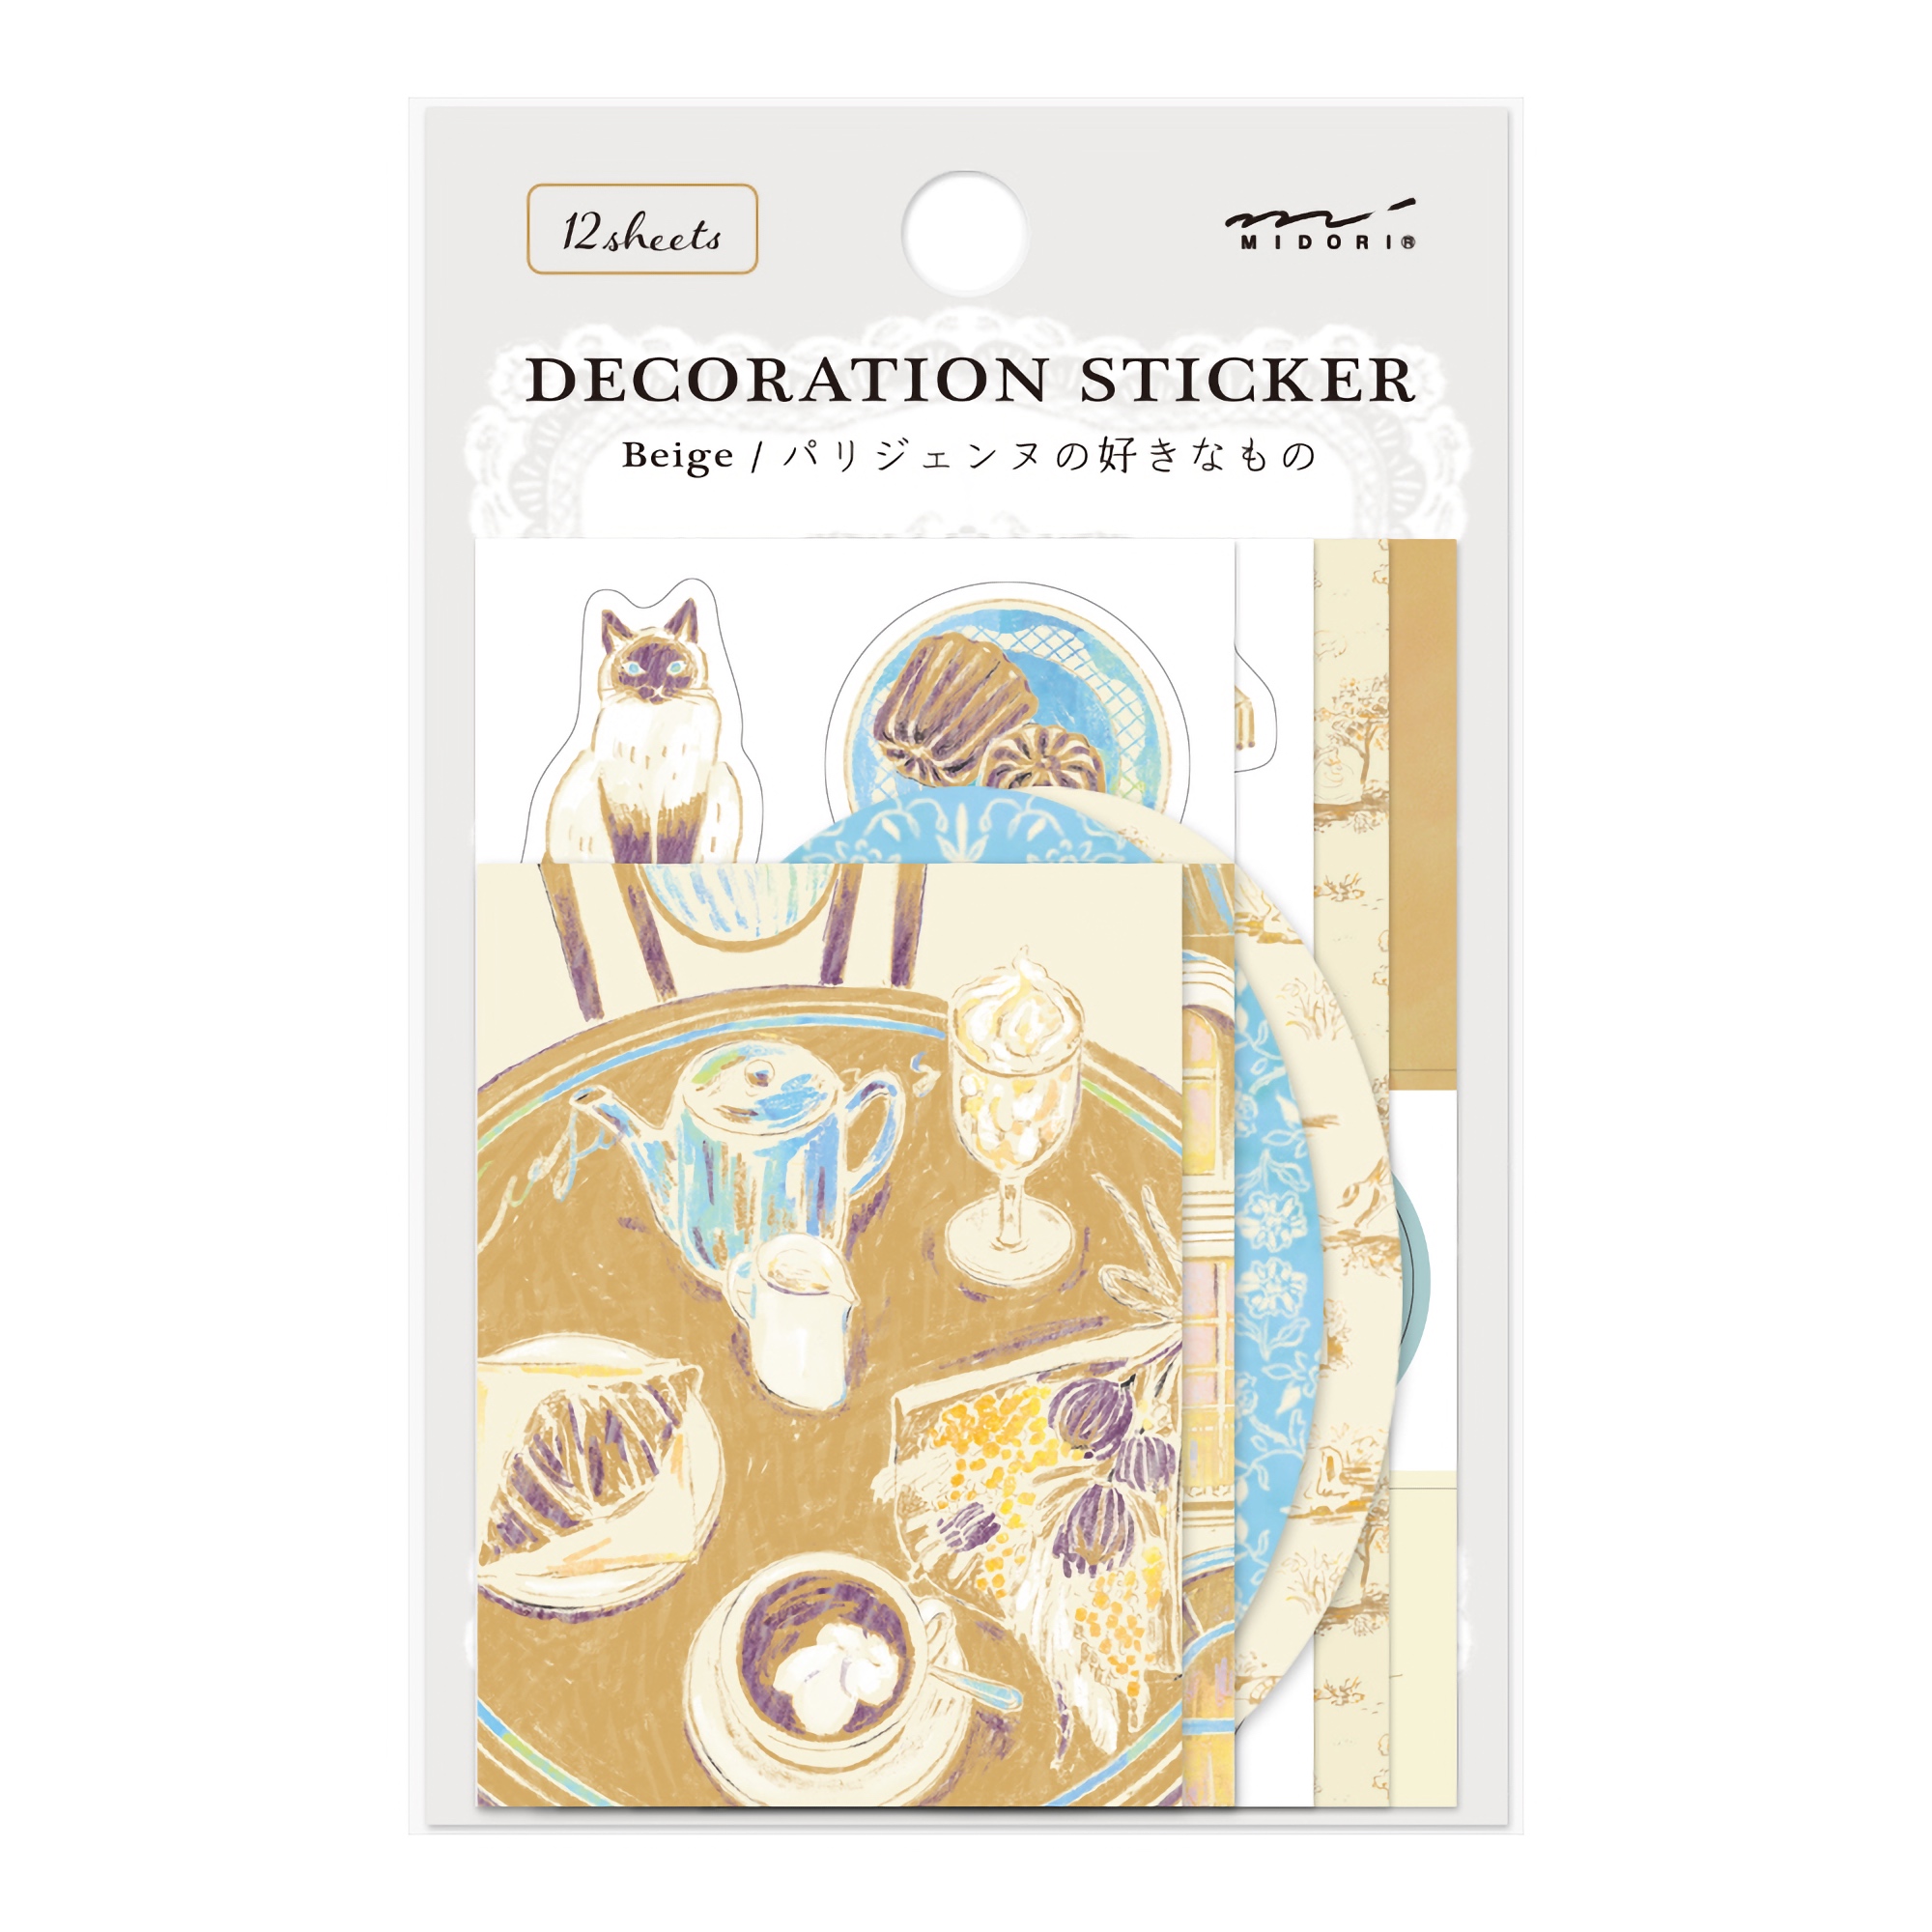 Midori Decoration Sticker Beige